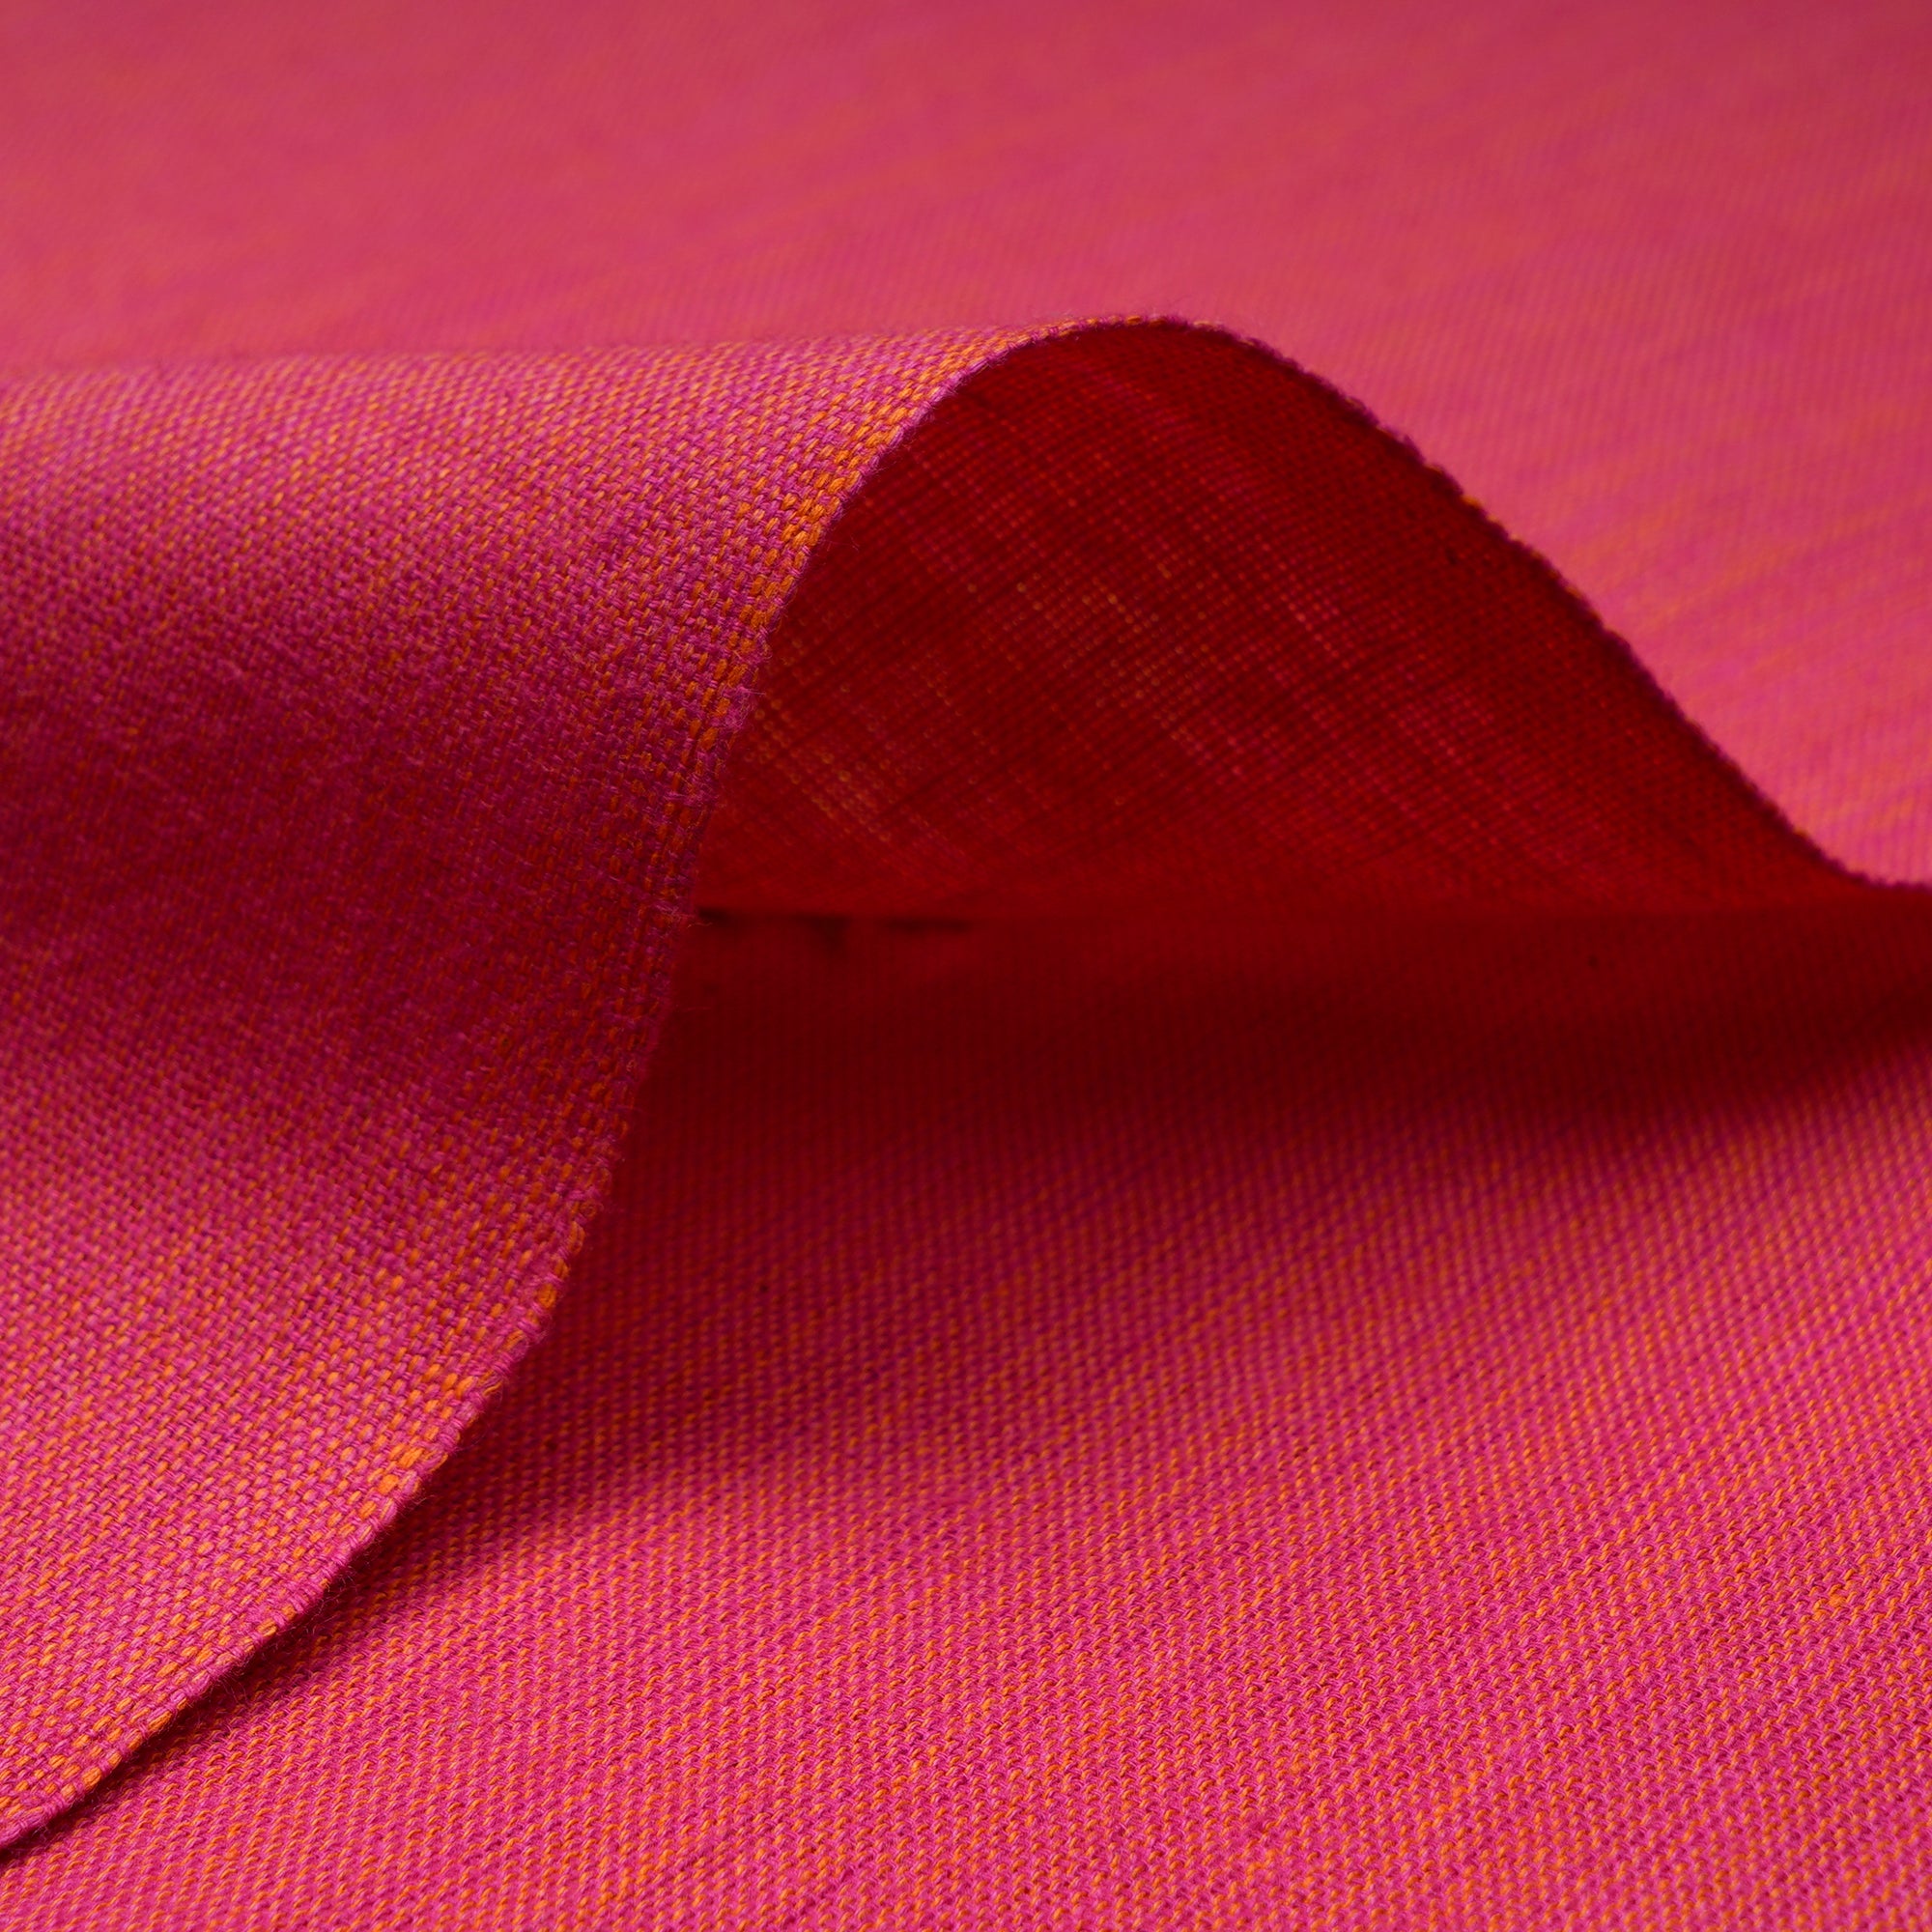 Honeysuckle Geometric Pattern Yarn Dyed Fancy Cutwork South Cotton Fabric